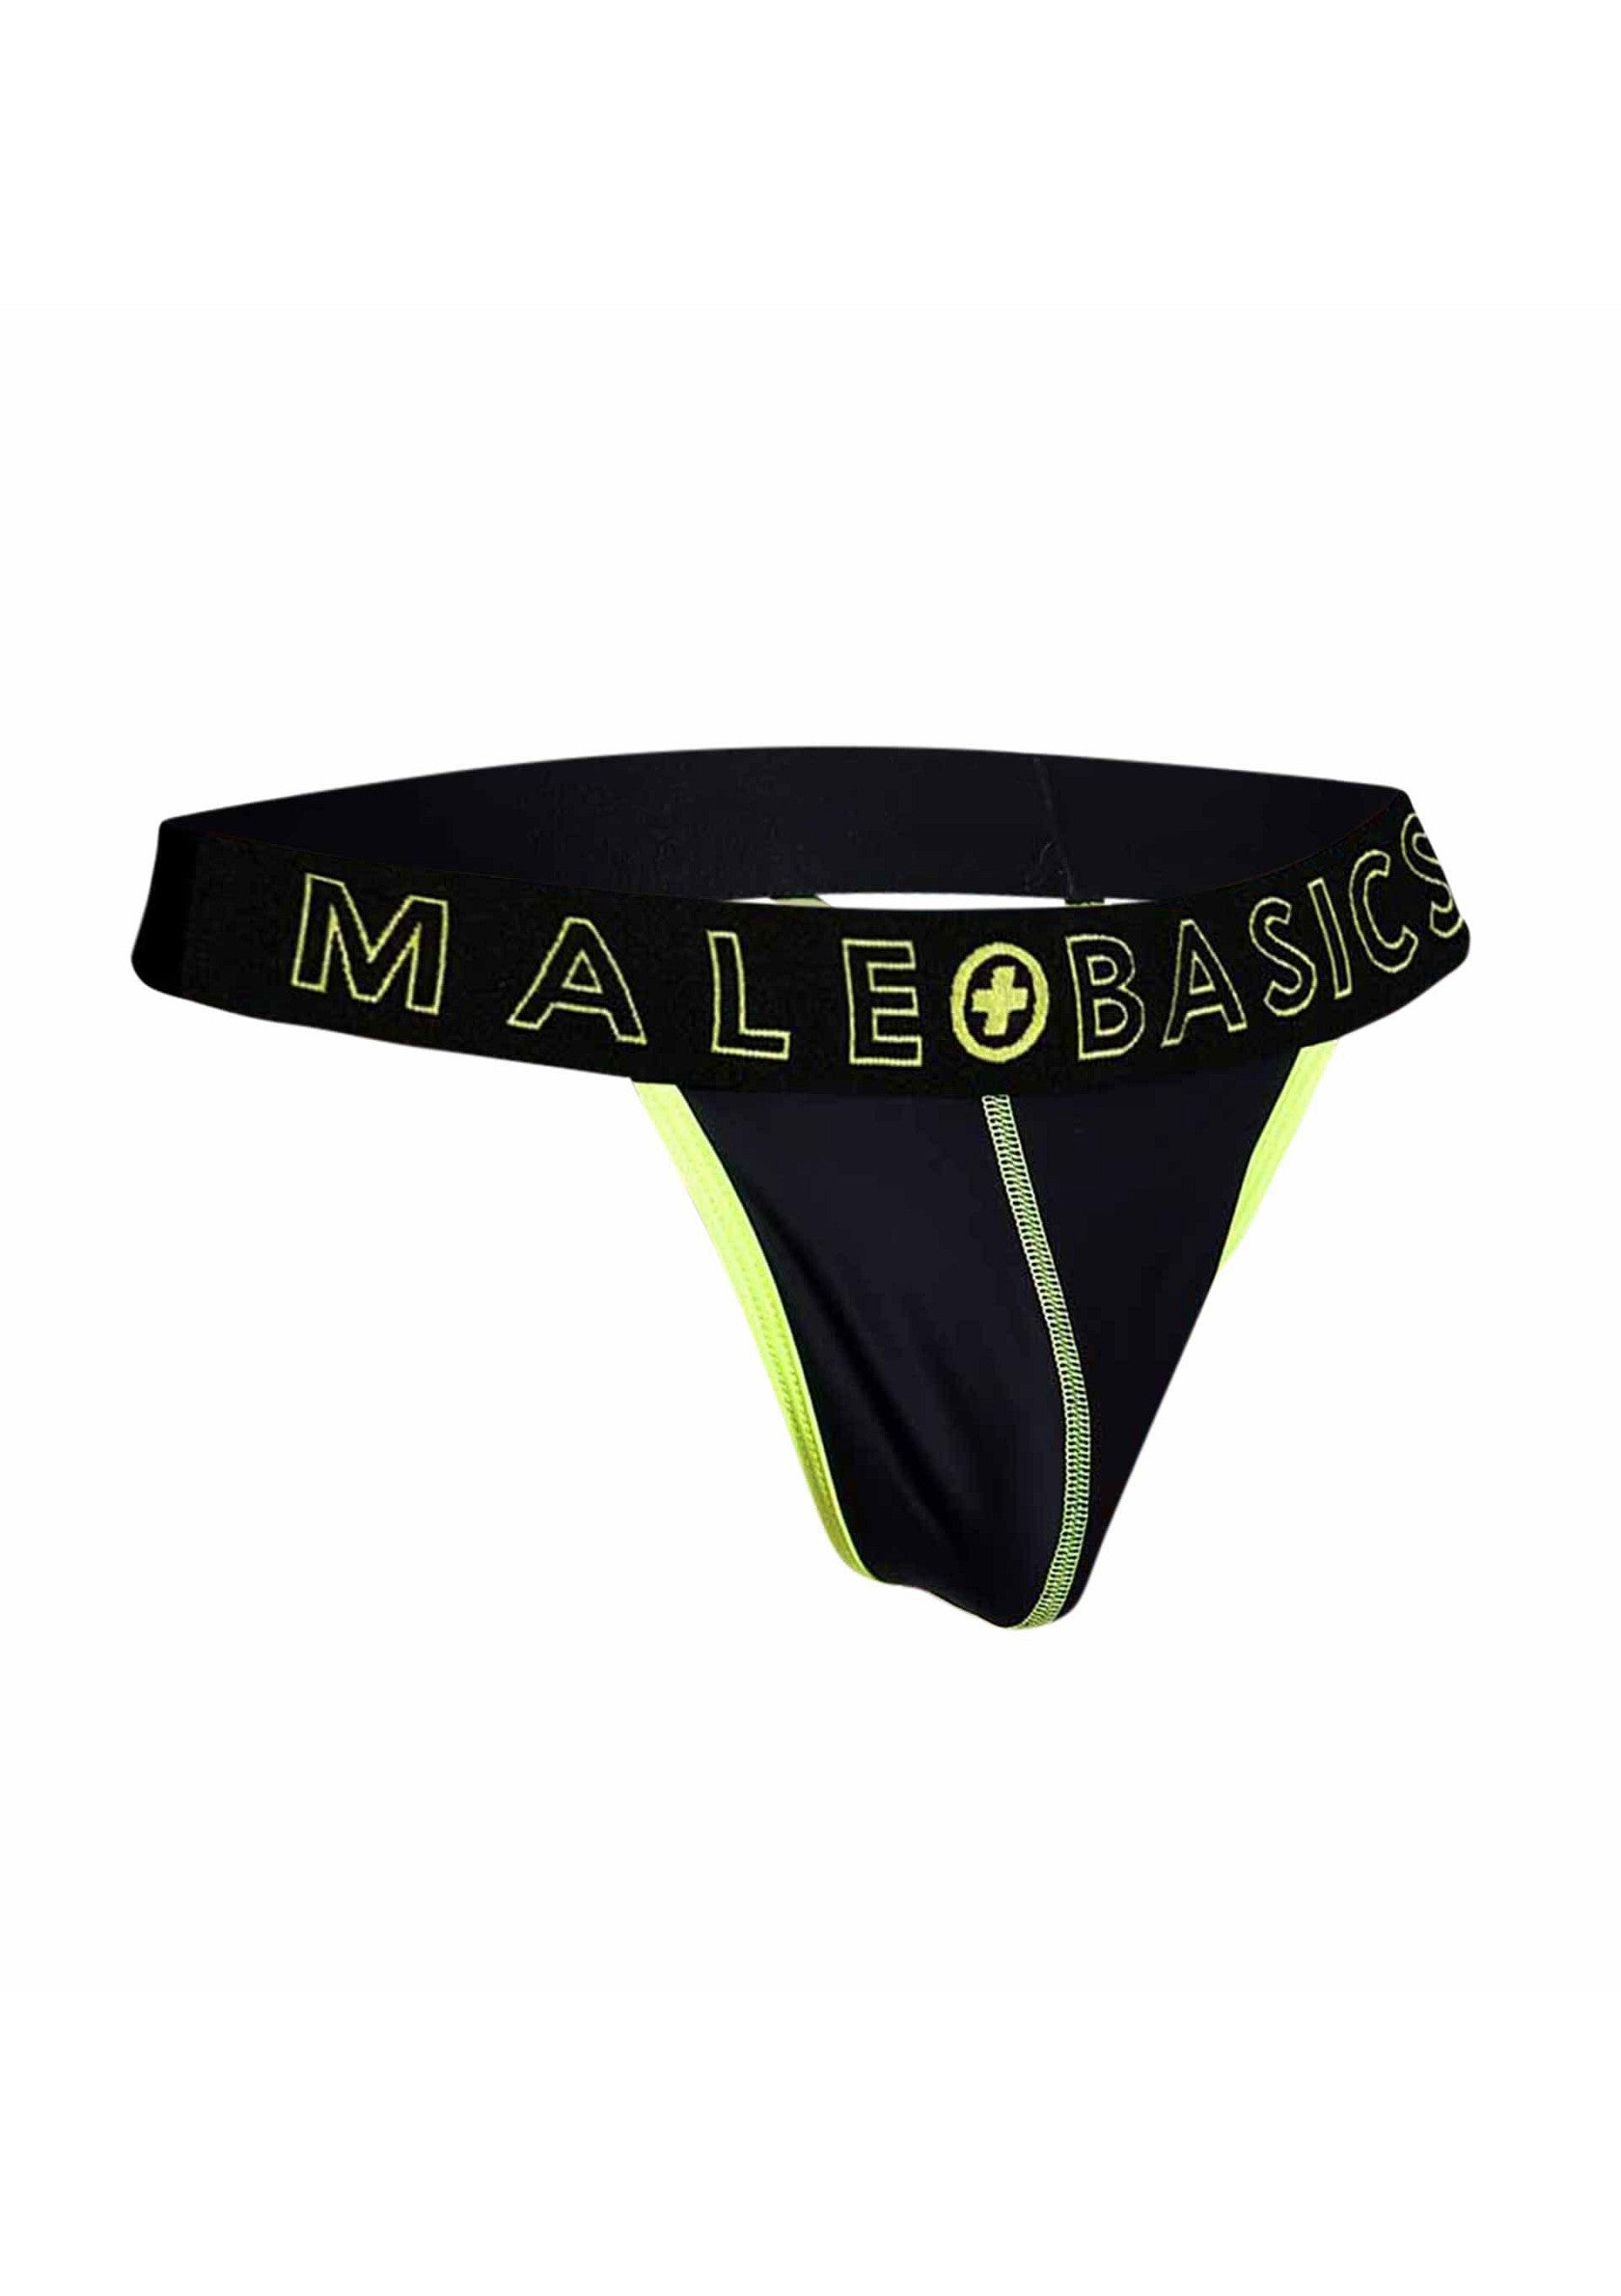 MaleBasics Neon Thong YELLOW S - 8